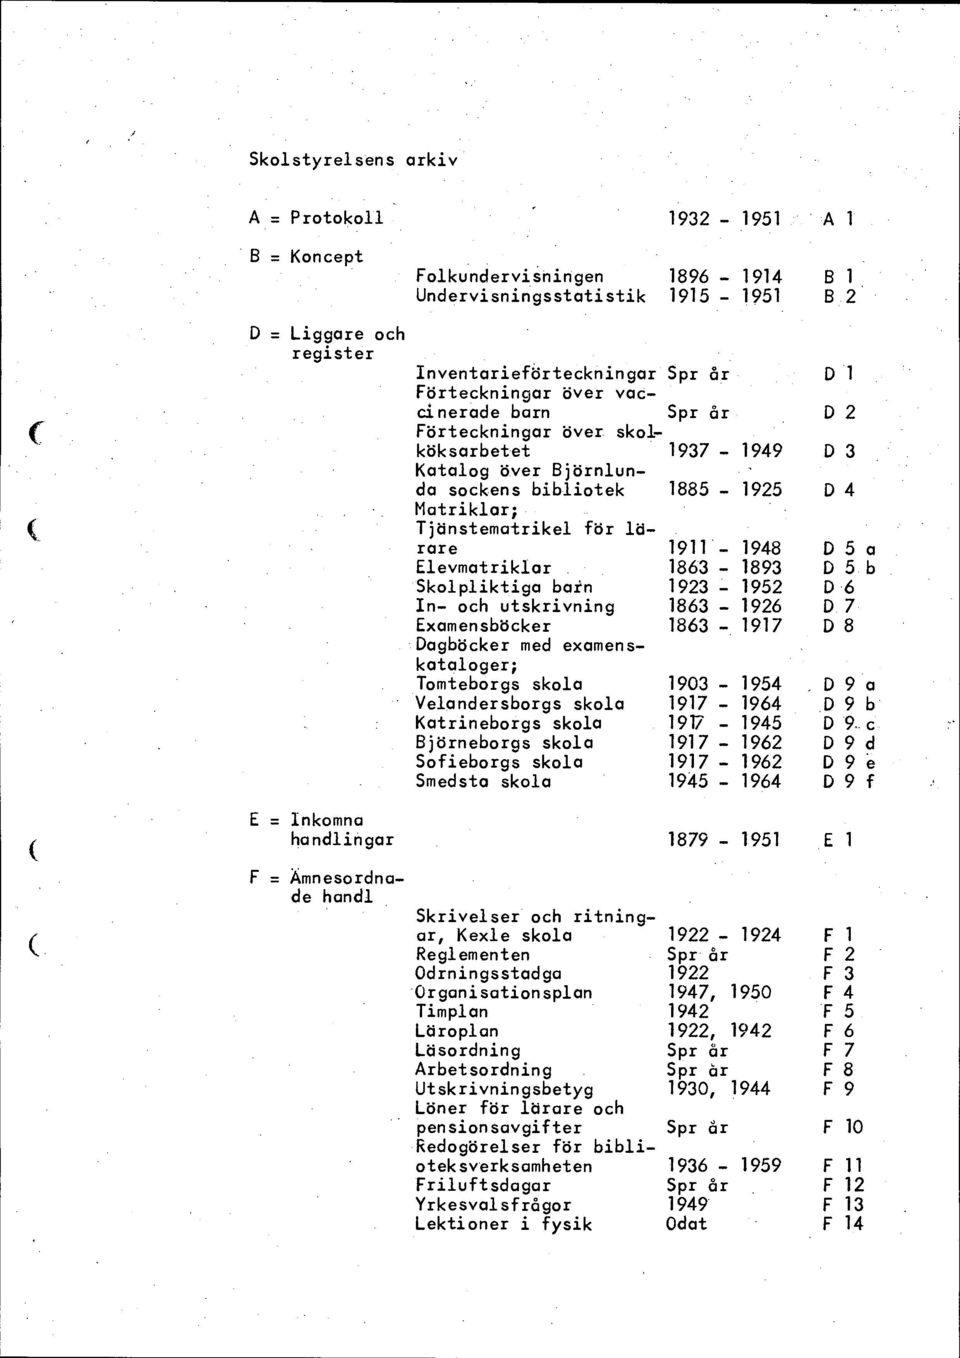 över. skol- D 2 köksarbetet Katalog över Björnlun- 1937-1949 D 3 da sockens bibliotek Matriklar; Tjänstematrikel för lärare 1885-1925 D 4 1911-1948 Elevmatriklar.